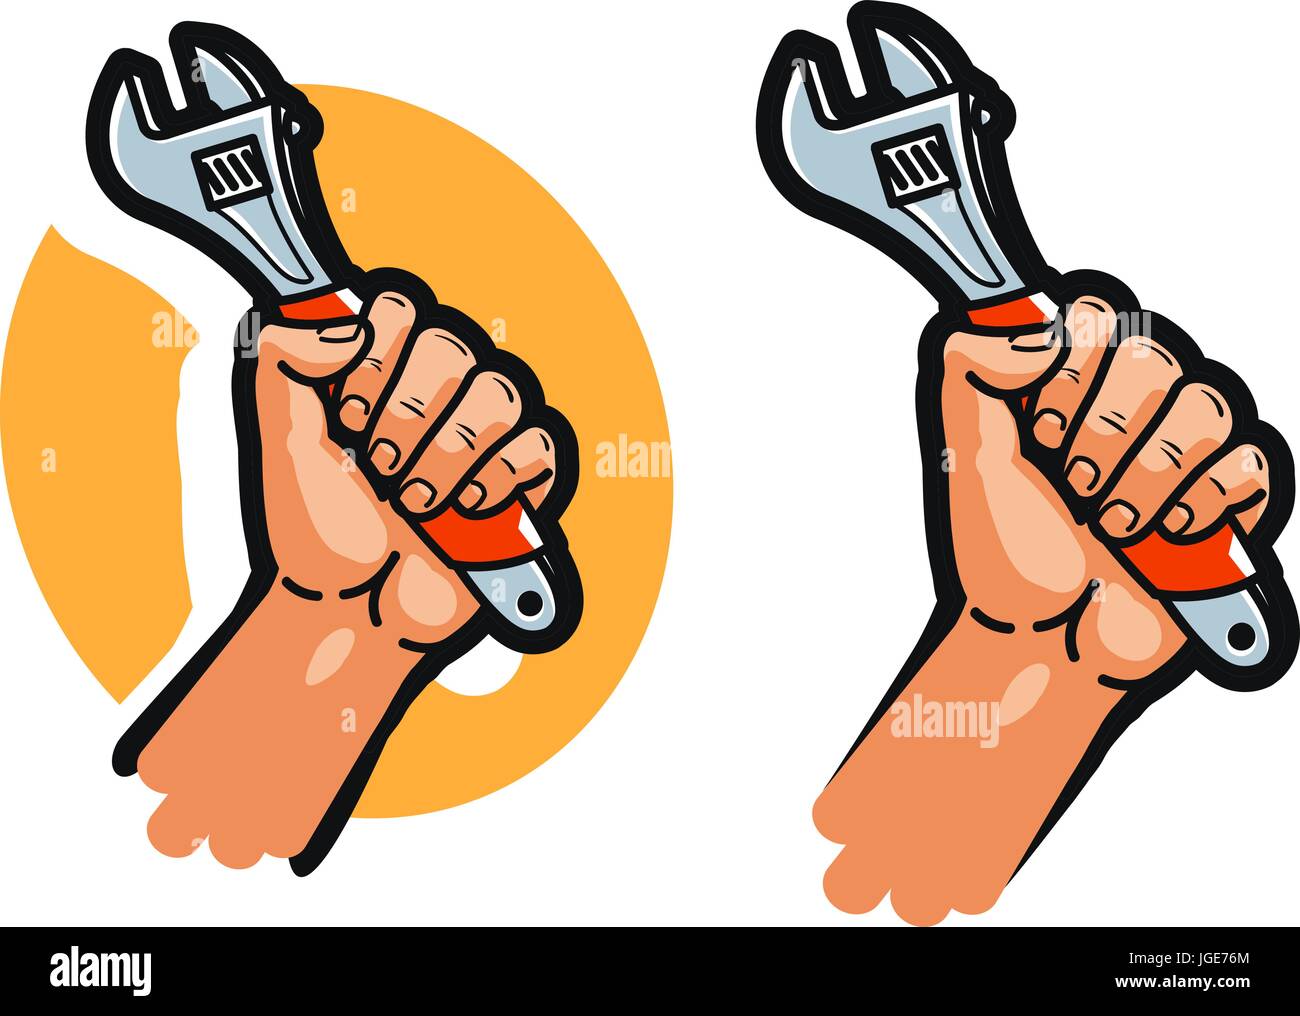 Schraubenschlüssel, Werkzeug oder in der hand. Reparatur, Service, Wartung, Support-Symbol oder Logo. Cartoon-Vektor-illustration Stock Vektor